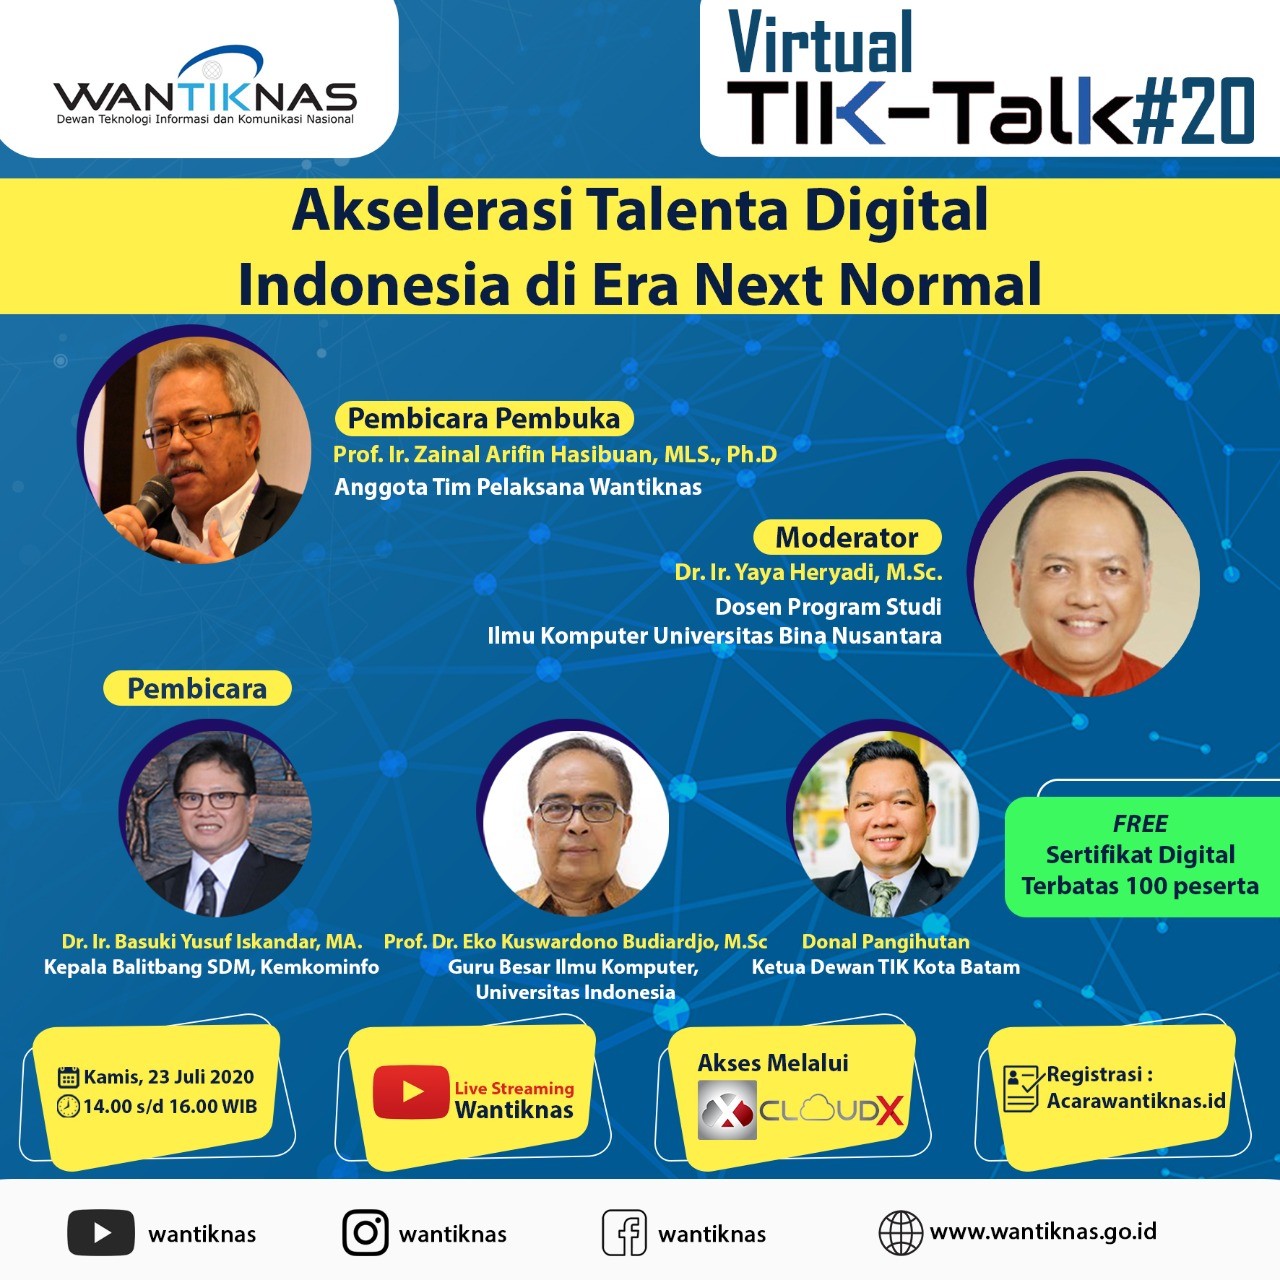 Akselerasi Talenta Digital Indonesia di Era Next Normal